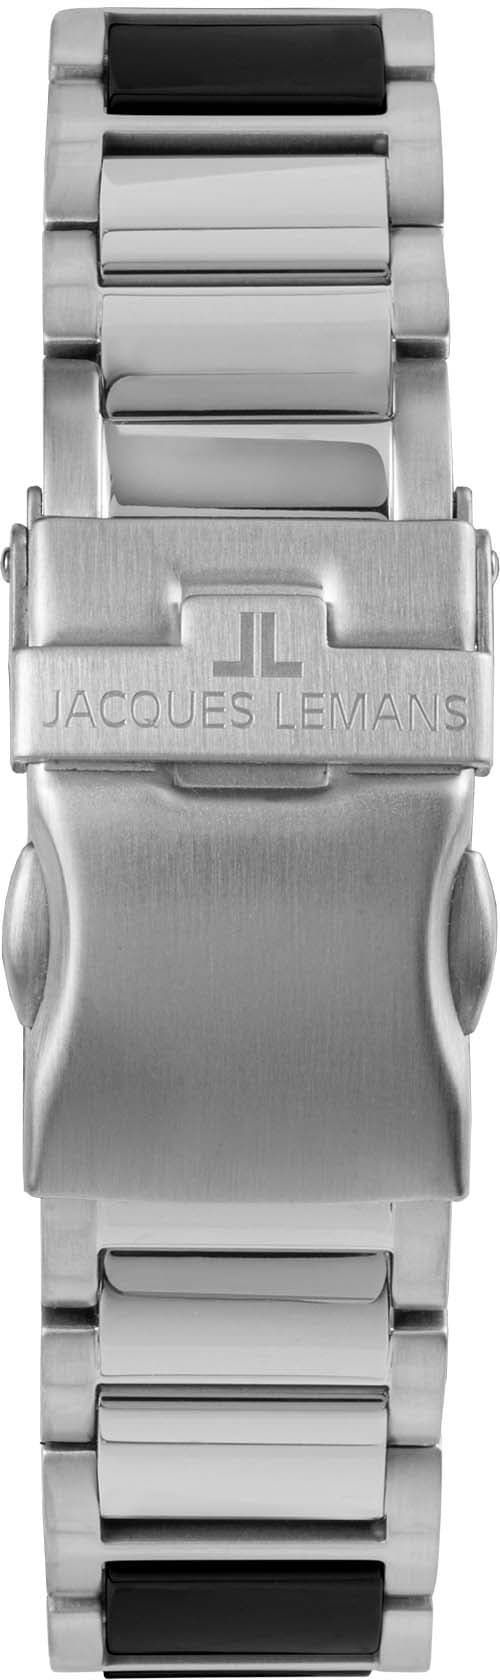 Jacques Lemans Keramikuhr »Liverpool, 42-10A«